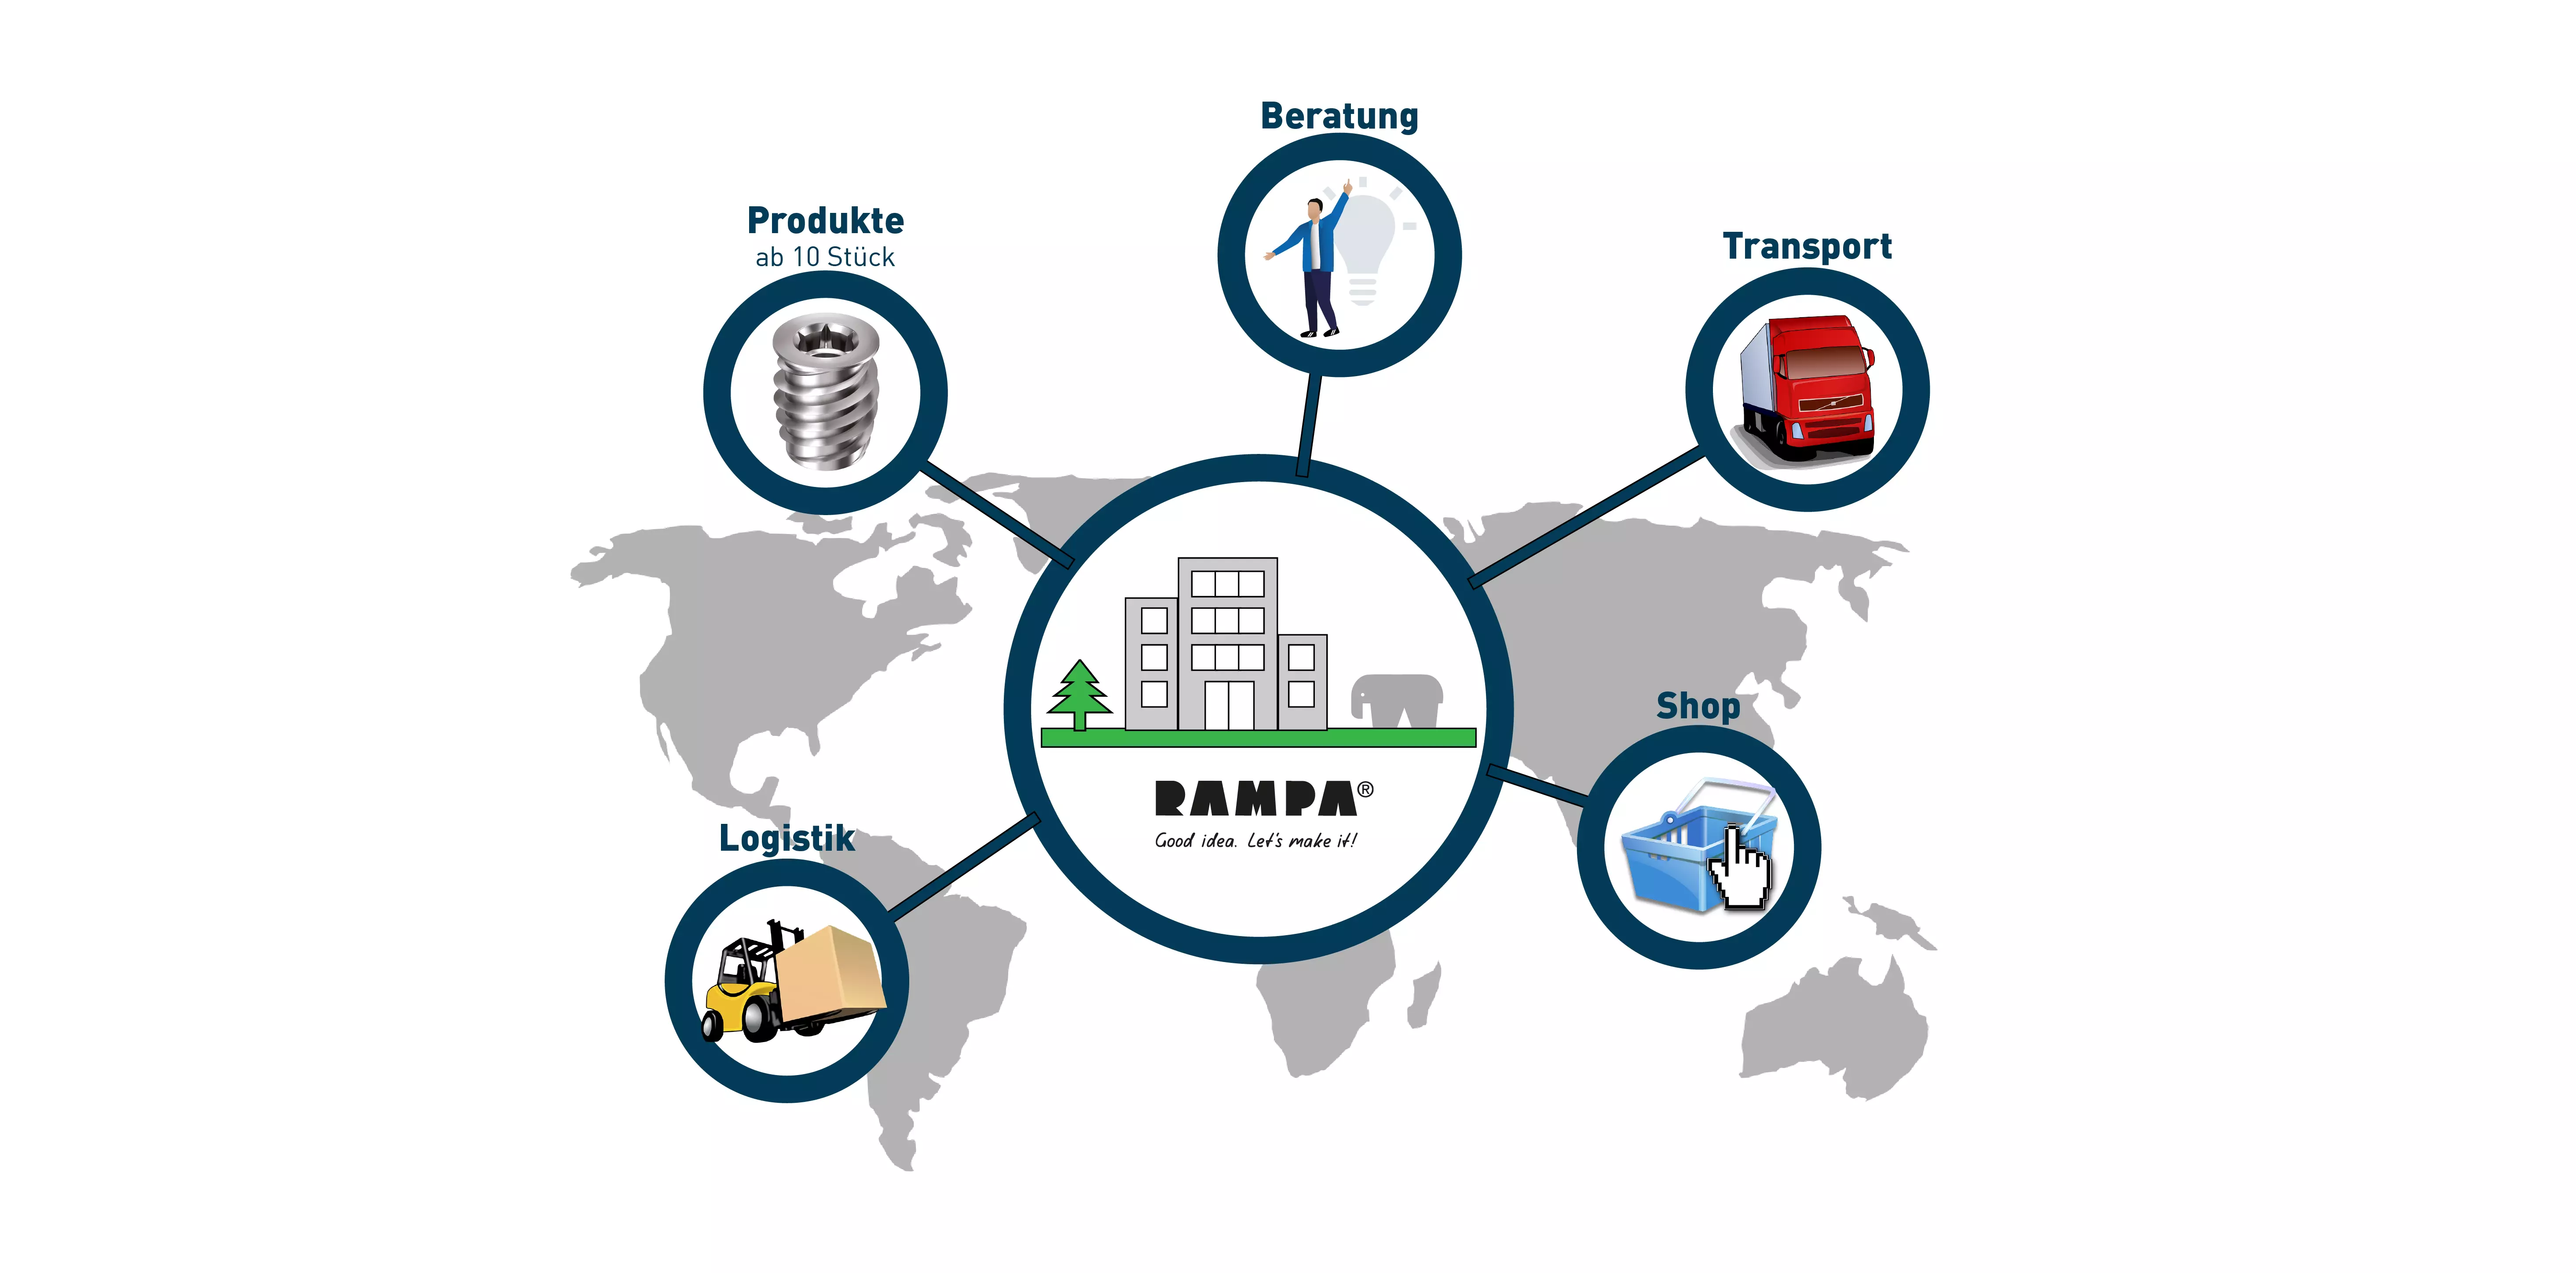 RAMPAs Leistungen neben der Herstellung hochwertiger Befestigungstechniken werden hier dargestellt. Dazu gehört die Beratung, der Transport, der Shop und die Logistik.